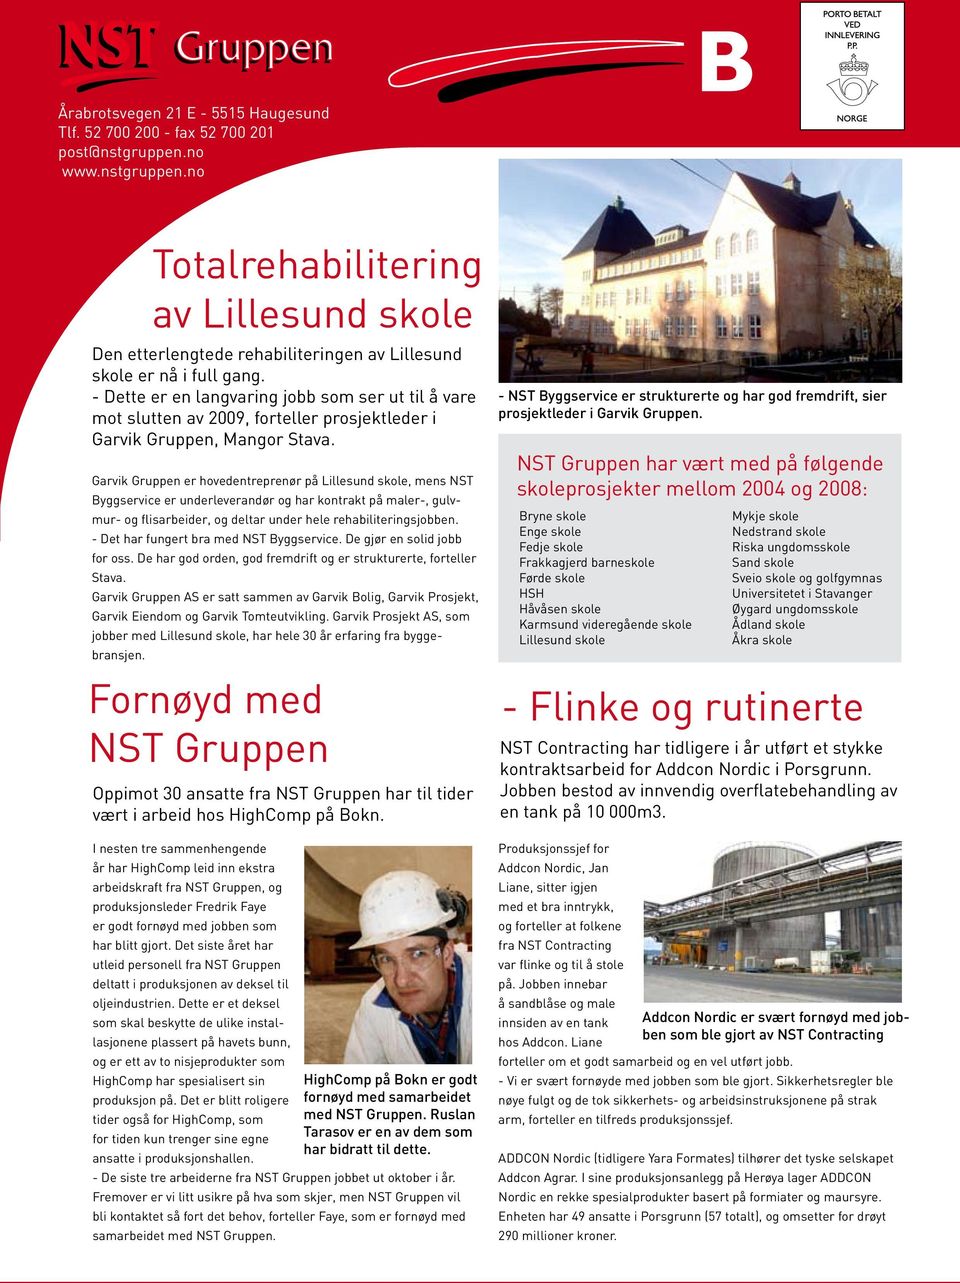 Garvik Gruppen er hovedentreprenør på Lillesund skole, mens NST Byggservice er underleverandør og har kontrakt på maler-, gulvmur- og flisarbeider, og deltar under hele rehabiliteringsjobben.